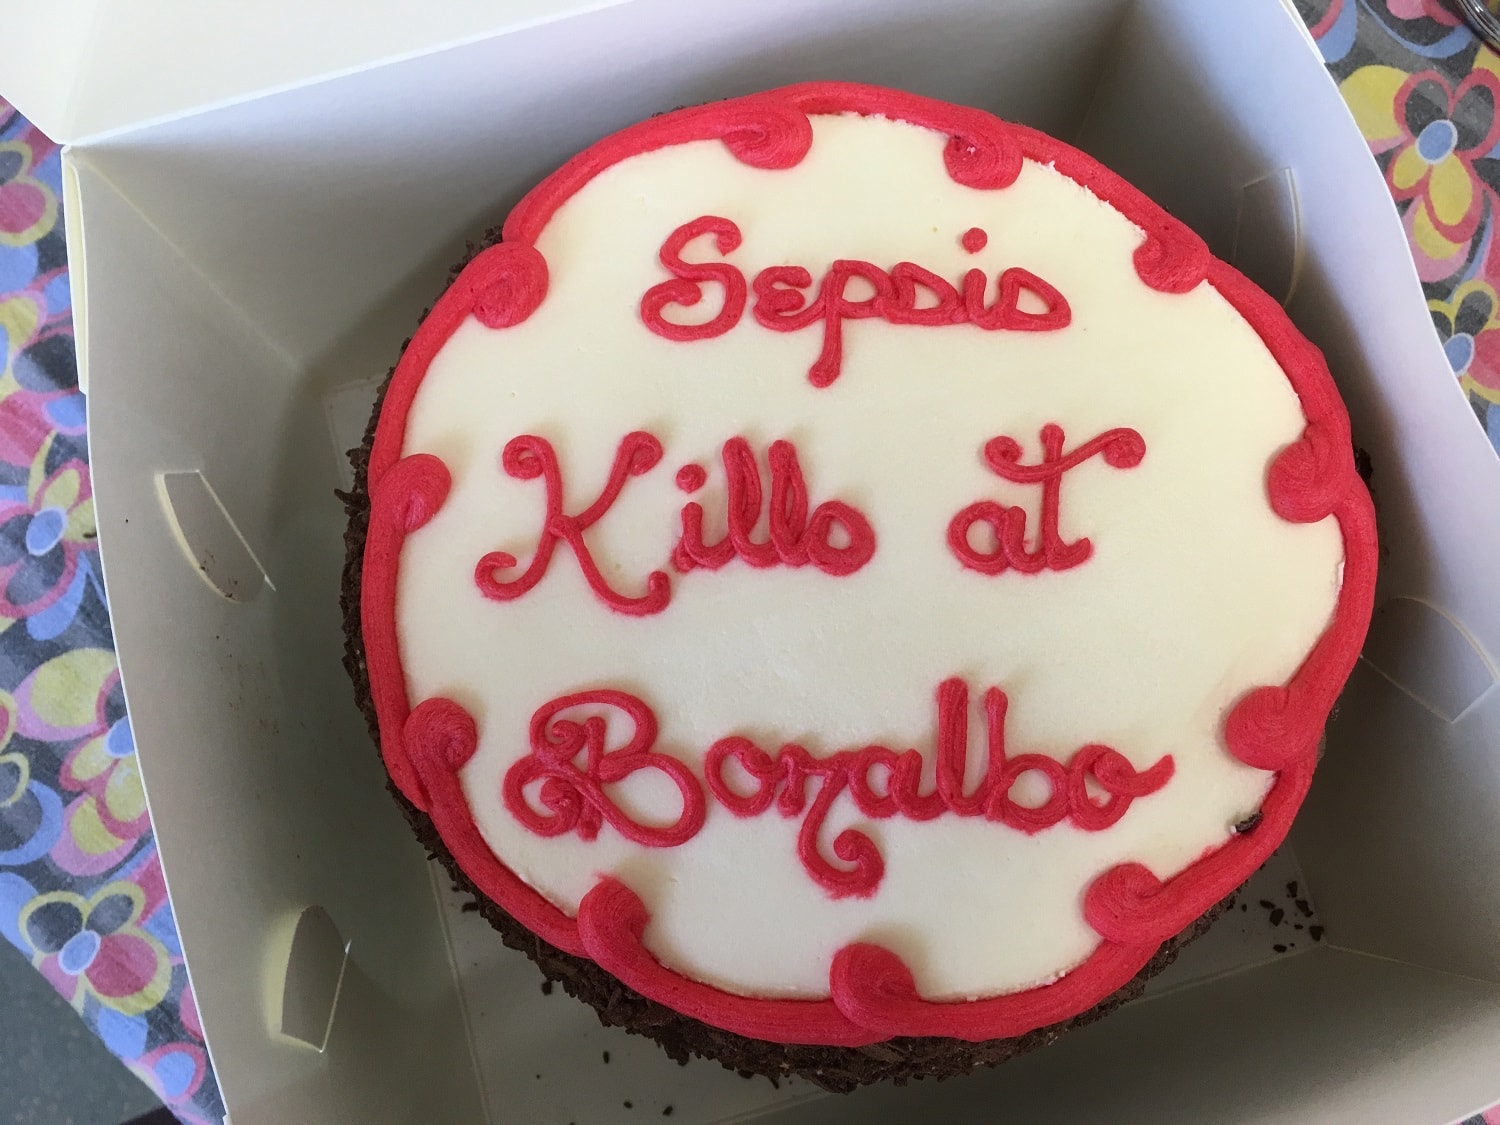 Bonalbo Cake-min.JPG